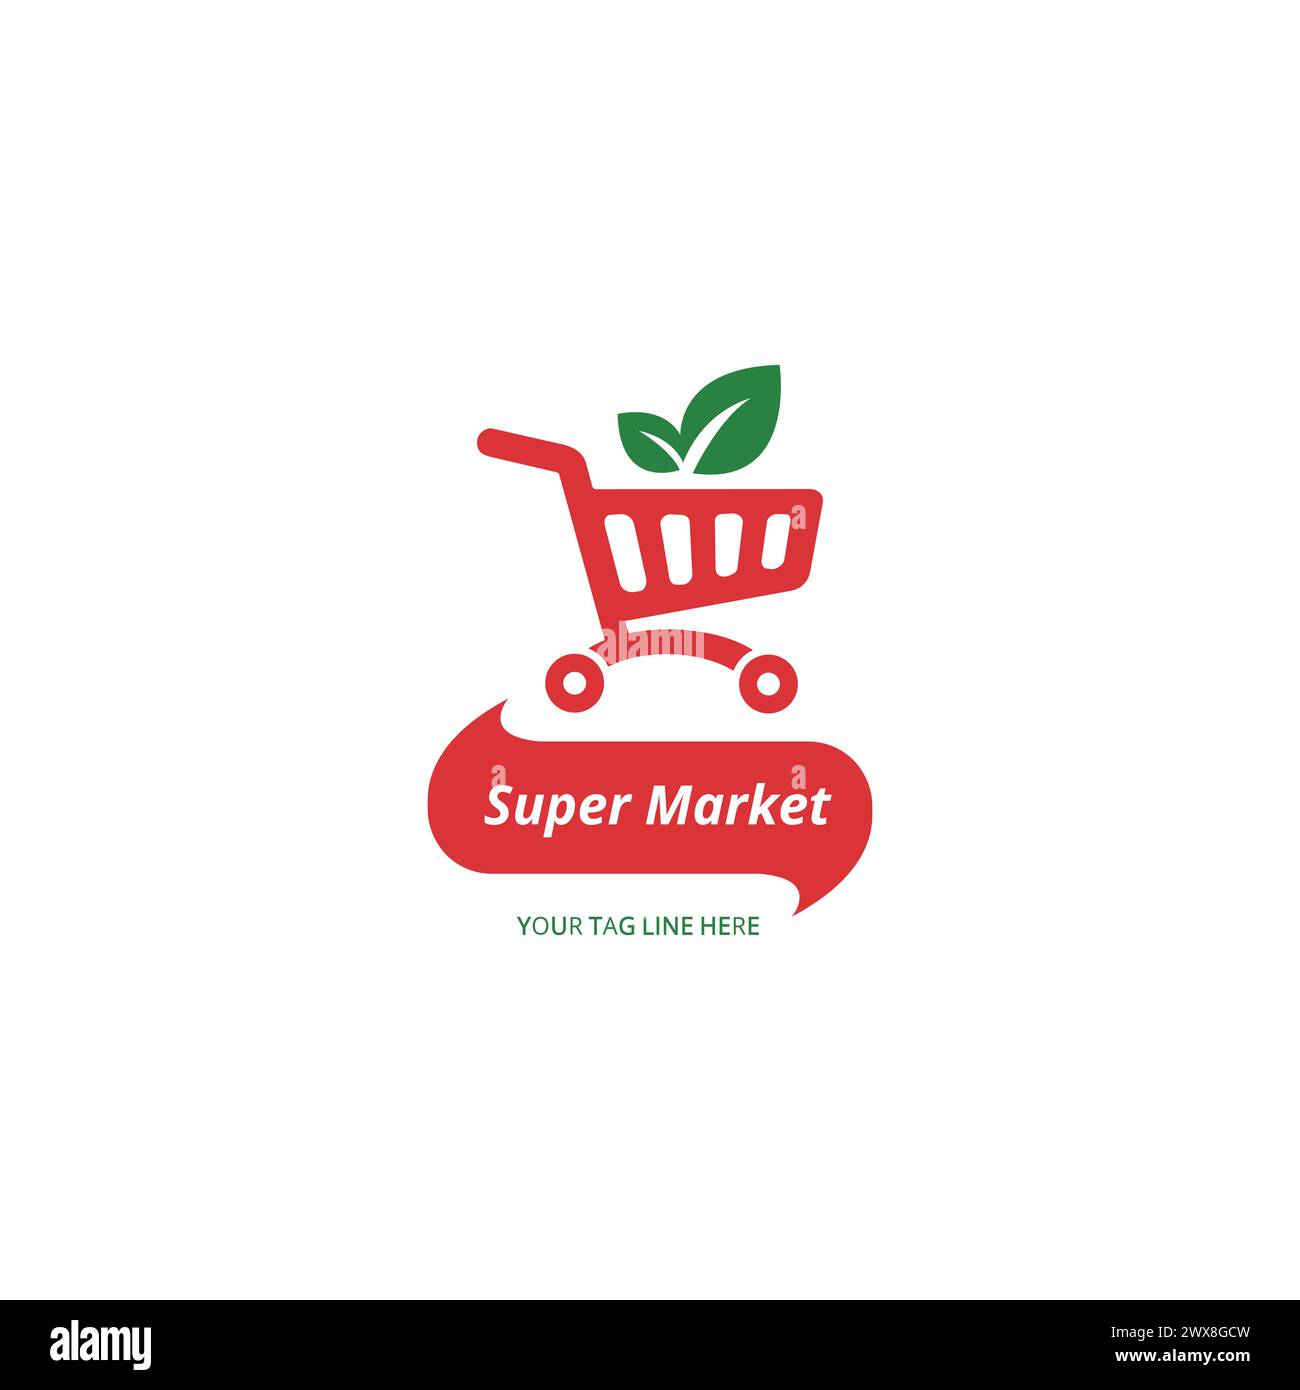 logo concept for shop , supermarket or supermall. organic shopping cart logo design. Stock Vector